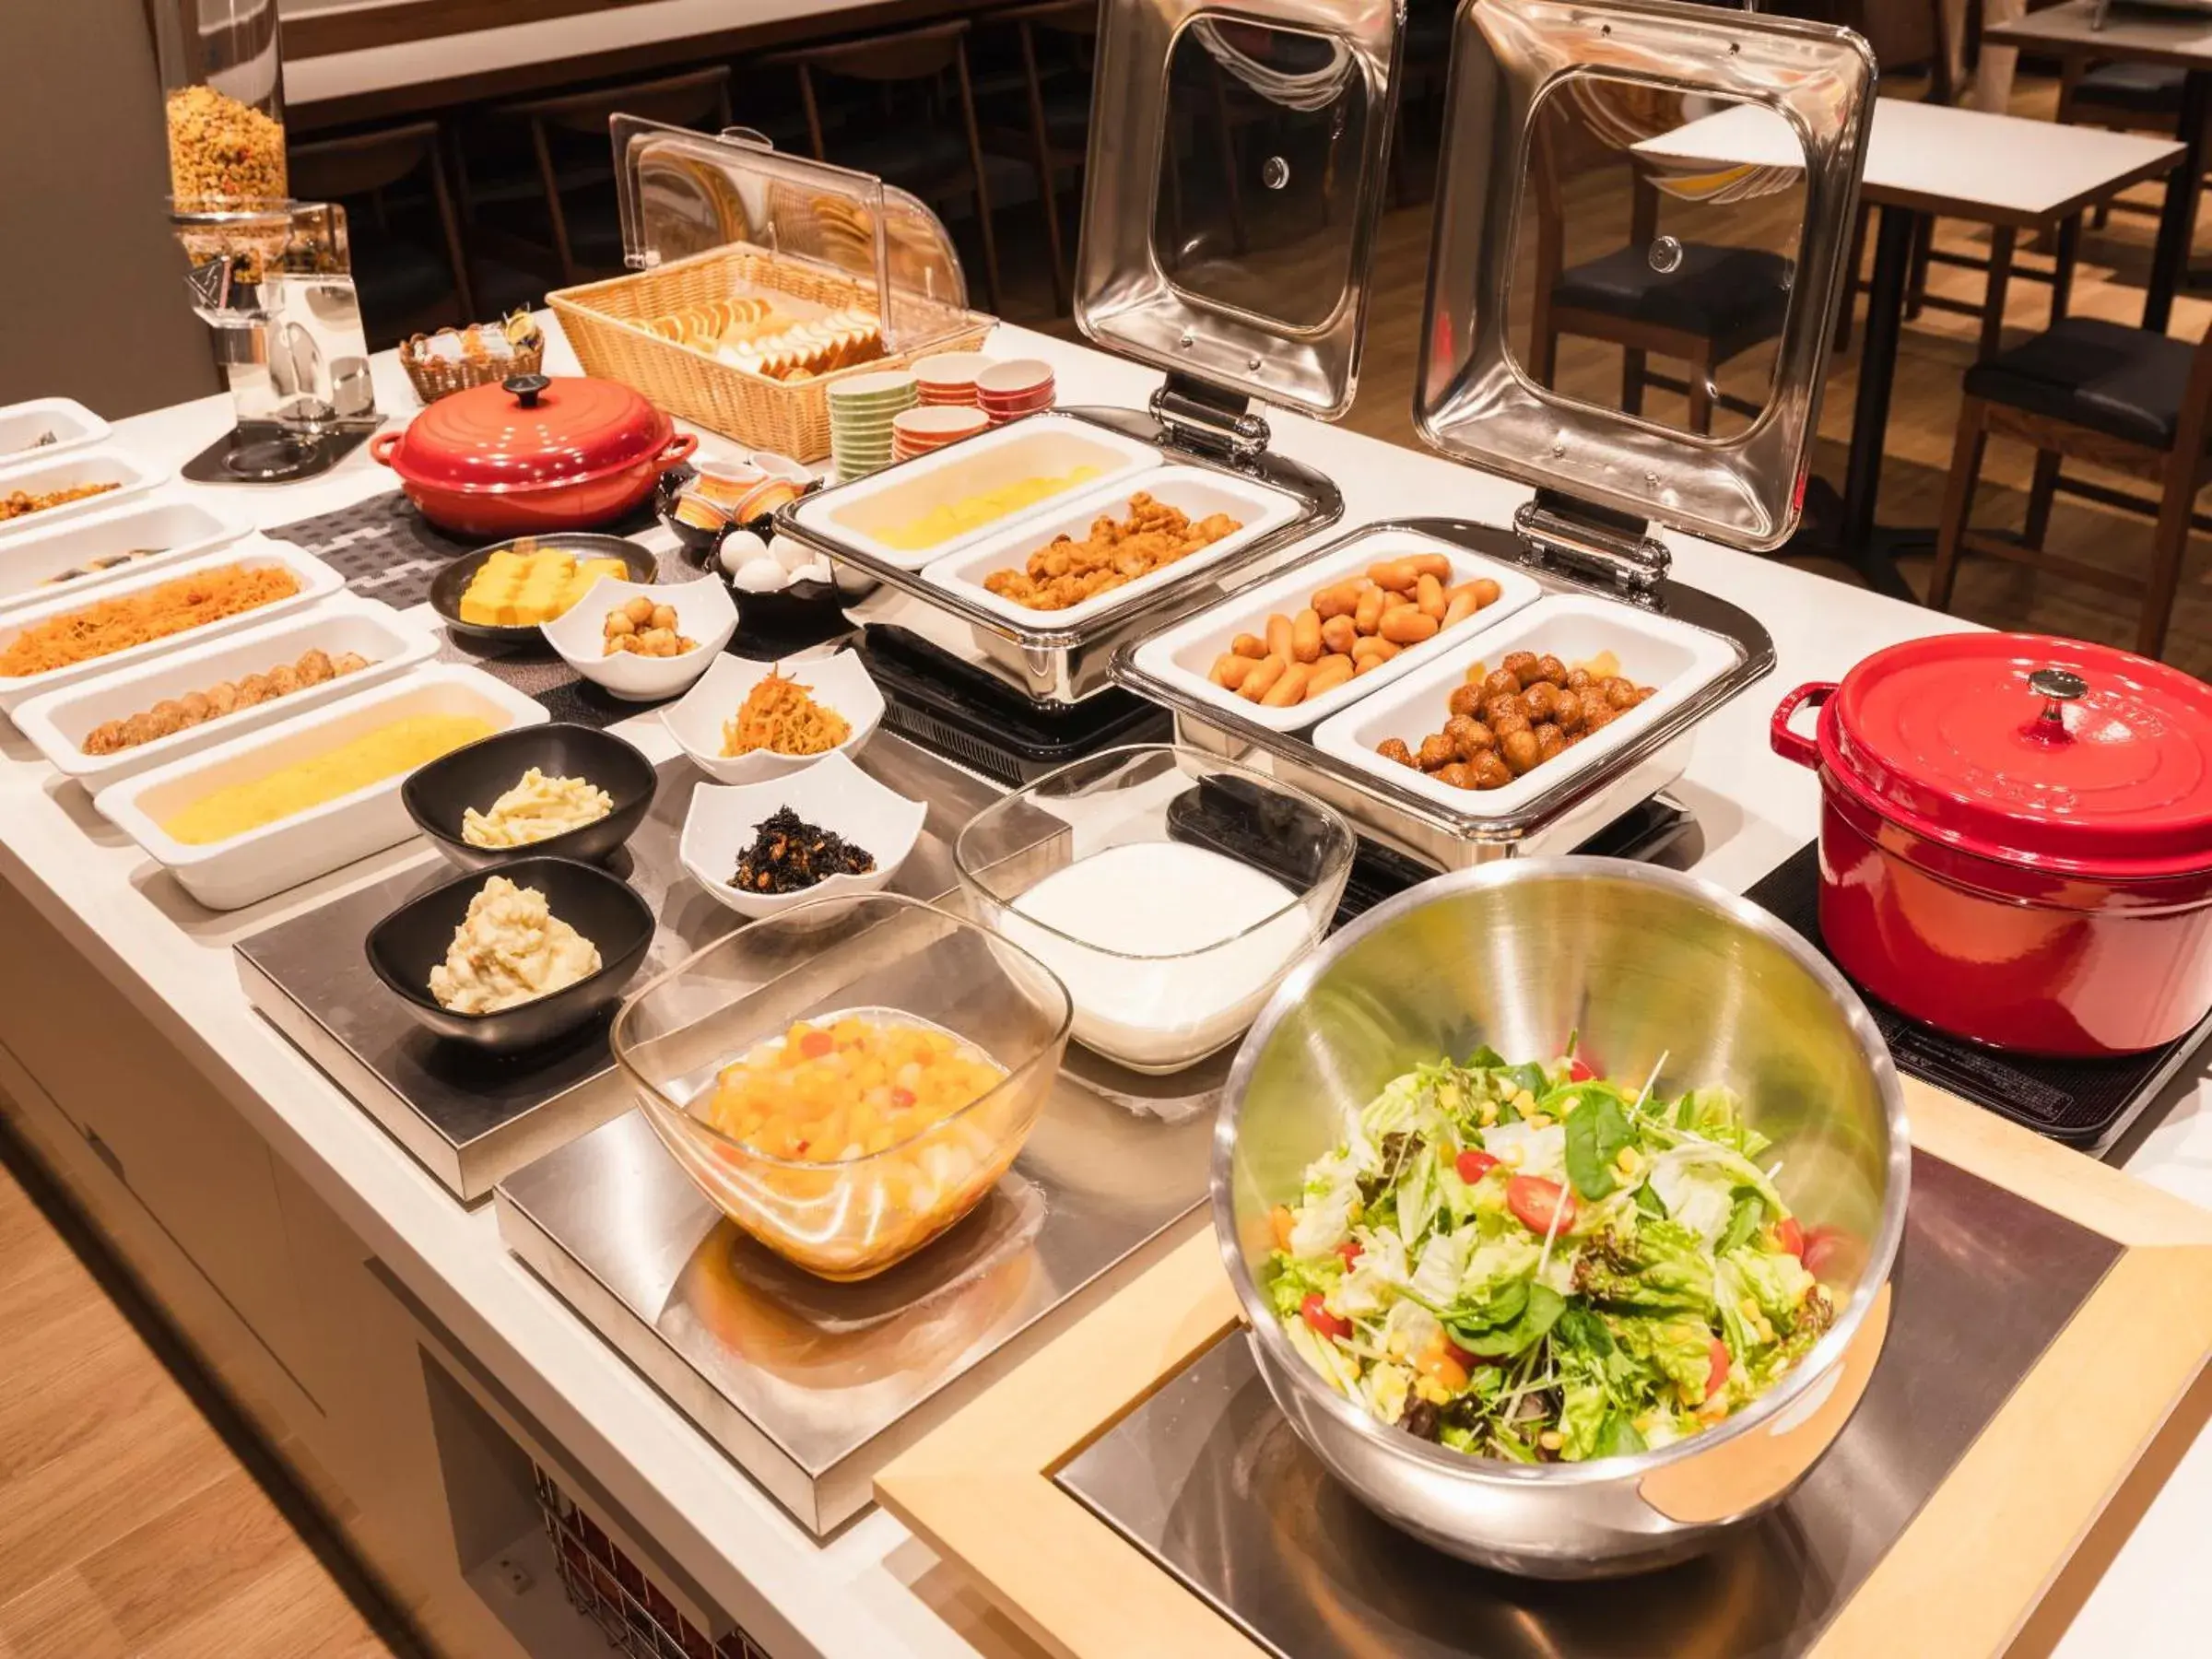 Buffet breakfast in Sotetsu Fresa Inn Daimon - Open from 26 January 2022